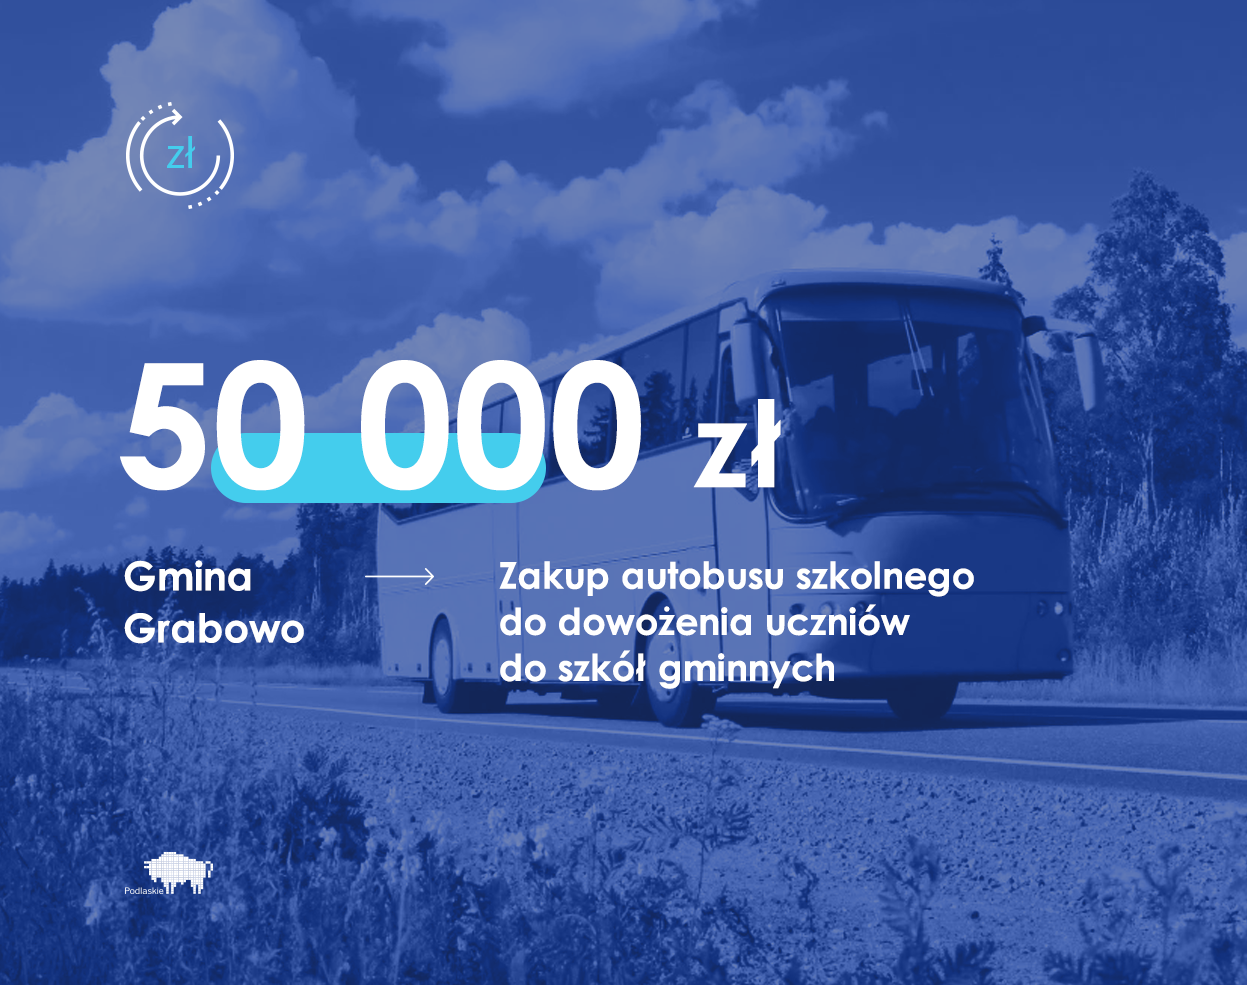 Grafika zawiera dane o przekazaniu 50 tys. zł na zakup autobusu szkolnego do dowożenia uczniów do szkół w gminie Grabowo